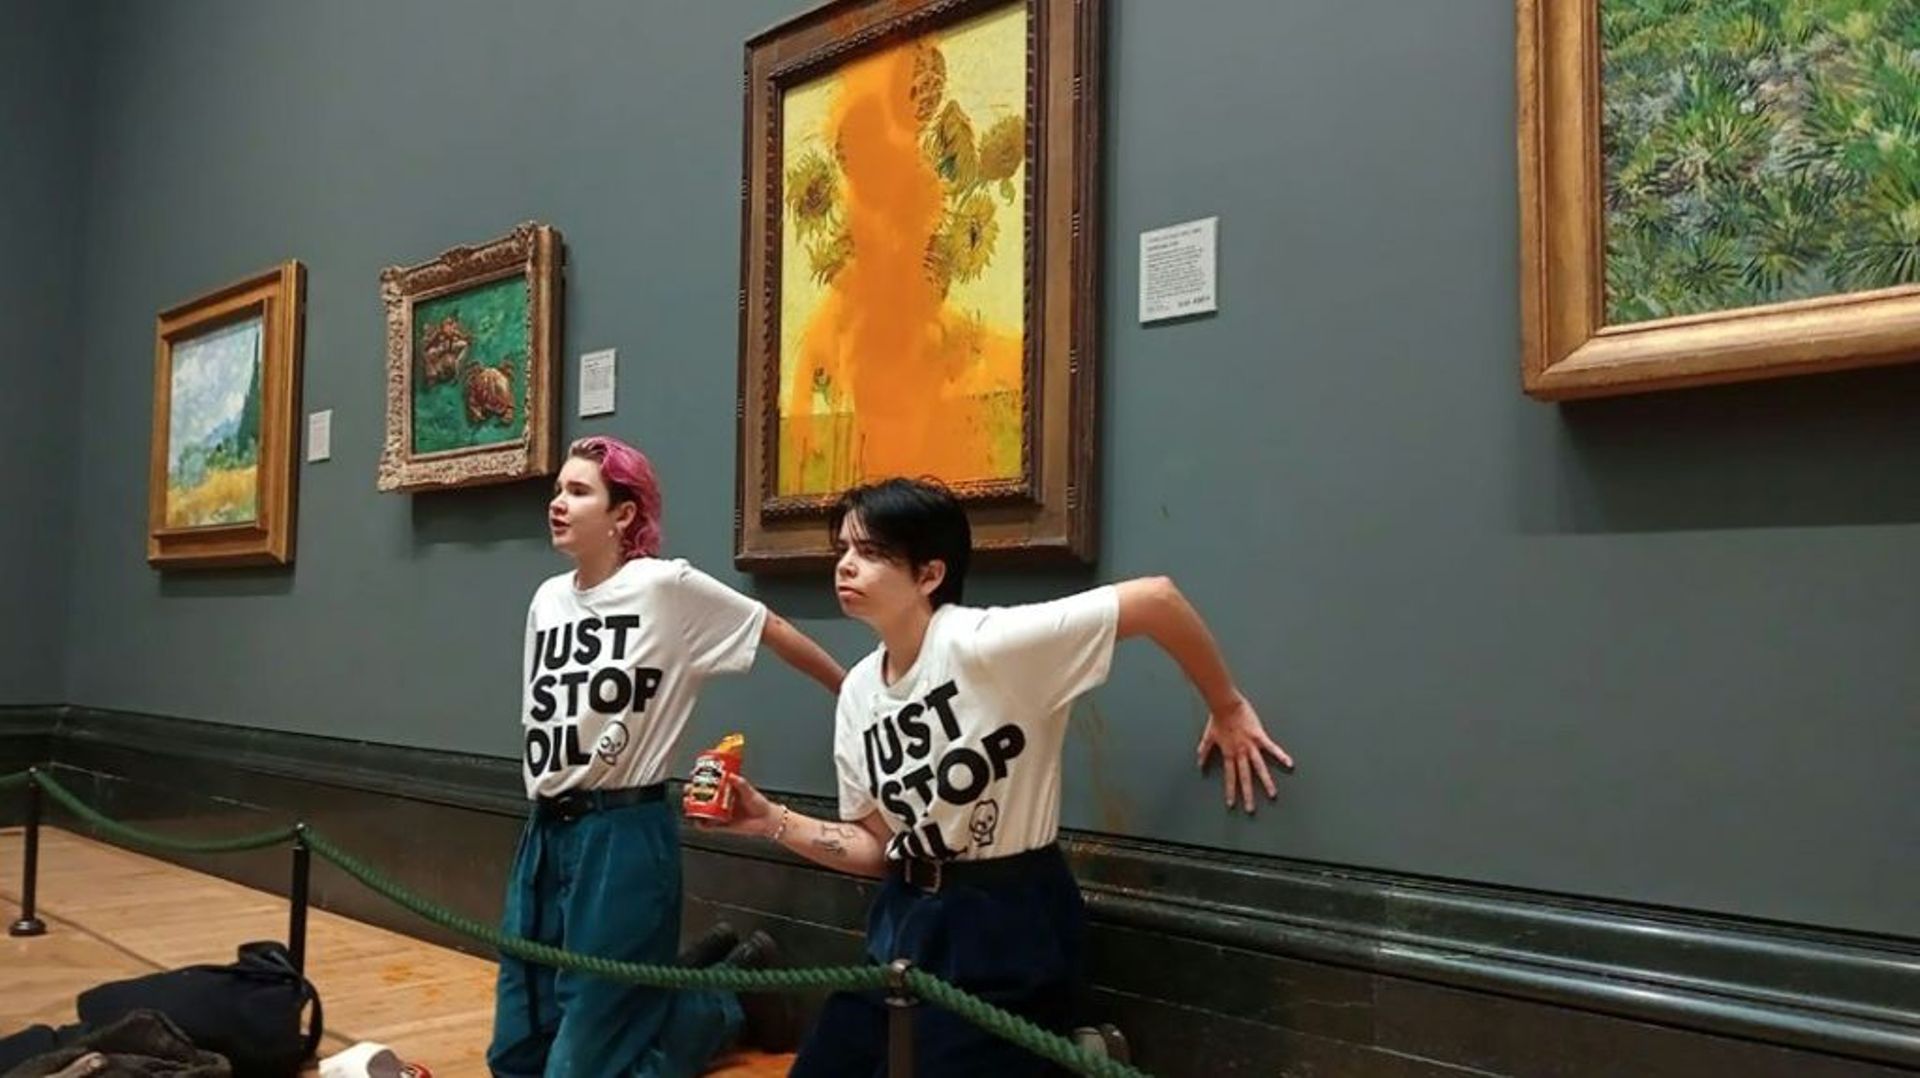 Photo diffusée par le groupe écologiste "Just Stop Oil" montrant des militantes, les mains collées au mur, devant le tableau les "Tournesols" du peintre Van Gogh aspergé de soupe à la tomate, le 14 octobre 2022 à la National Gallery de Londres